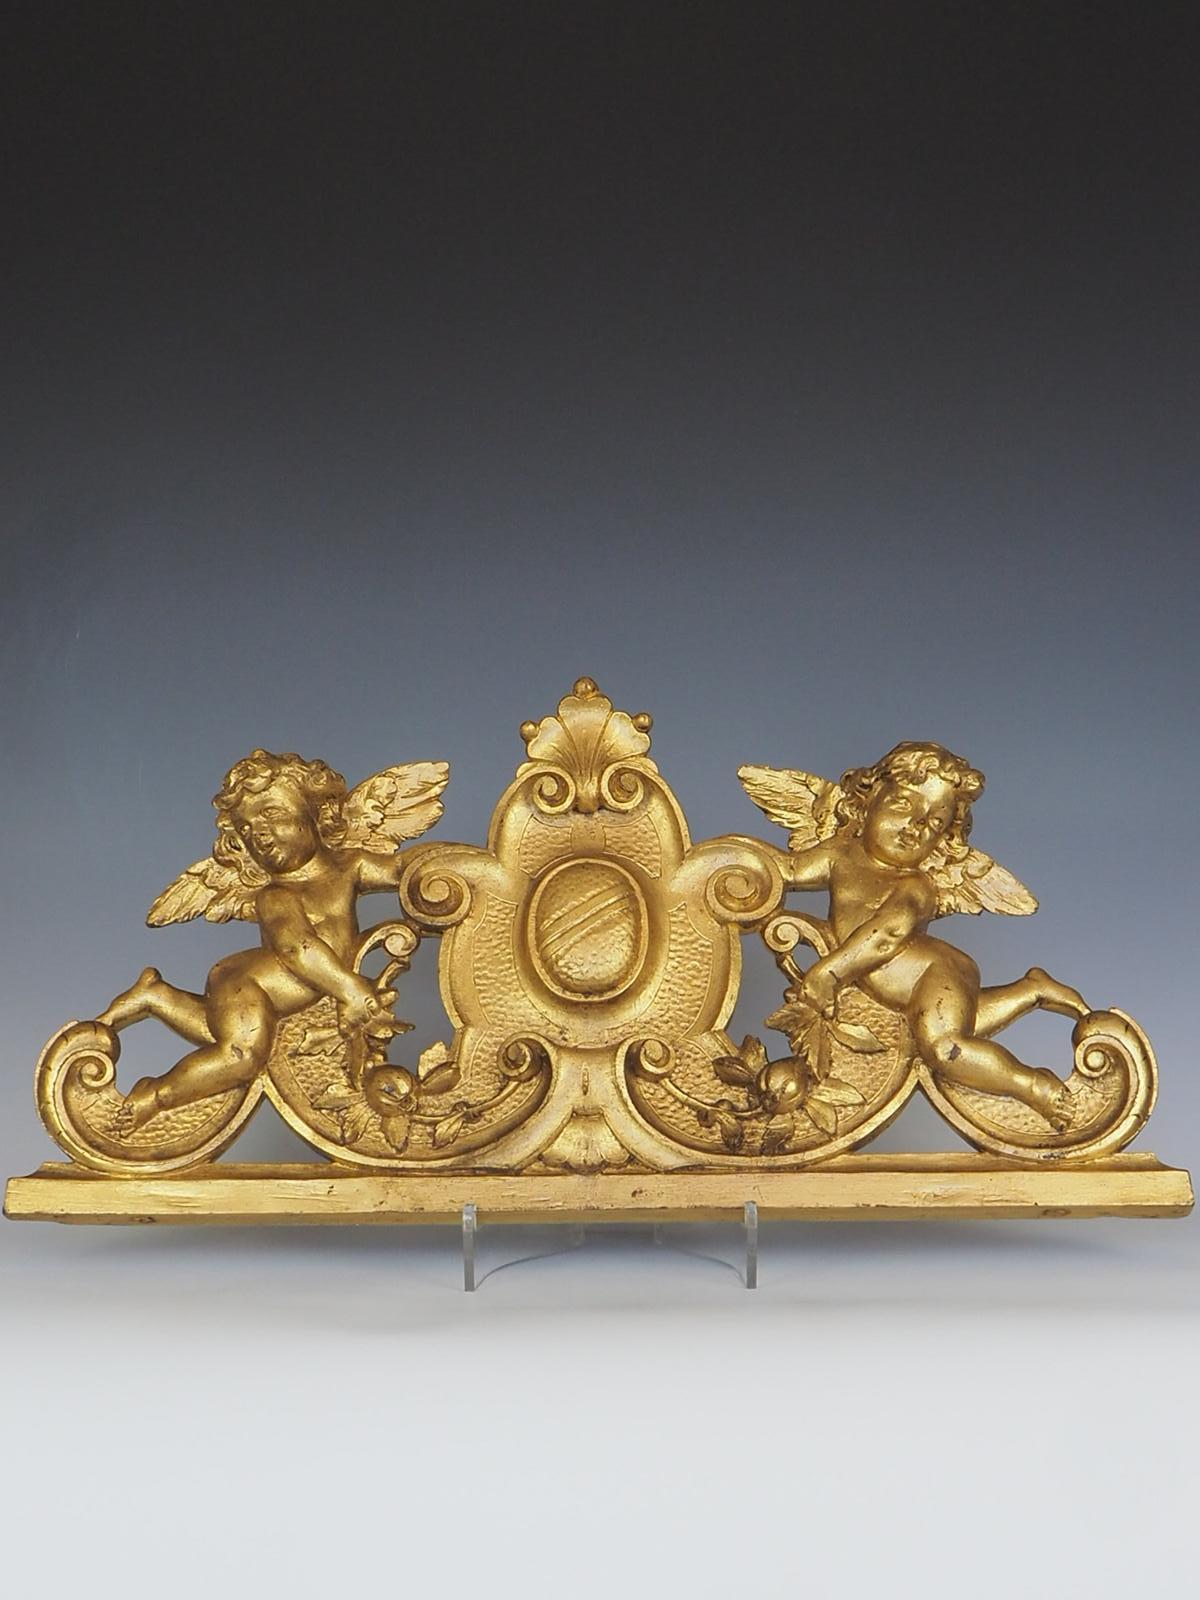 Le fronton de porte en bois doré Putti italien du XIXe siècle est une pièce vraiment exceptionnelle en raison de sa rareté et de ses détails exquis. Il s'agit d'une trouvaille rare pour les collectionneurs et les amateurs de décors anciens, car les